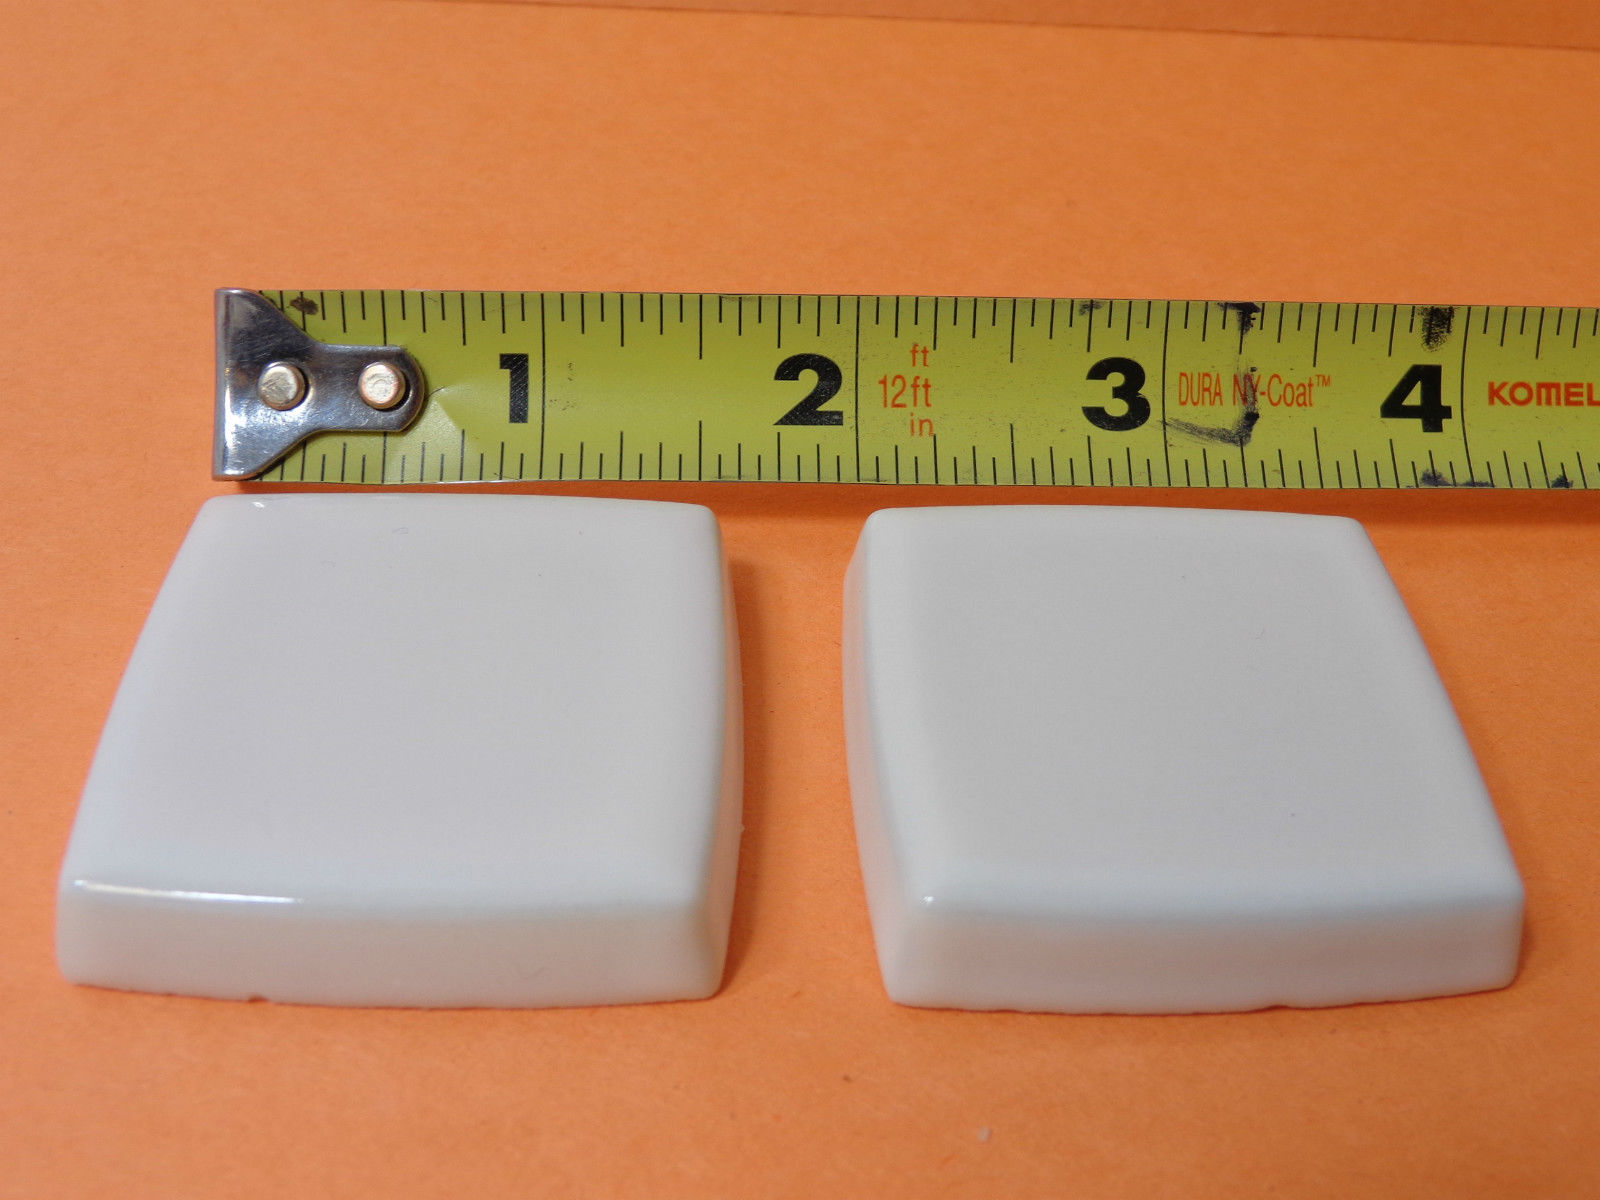 Kohler | 9926-17 | KL9926-17 (22493-17) Kohler Alterna Large 2-1/2" Square Ceramic Inserts - TEAL